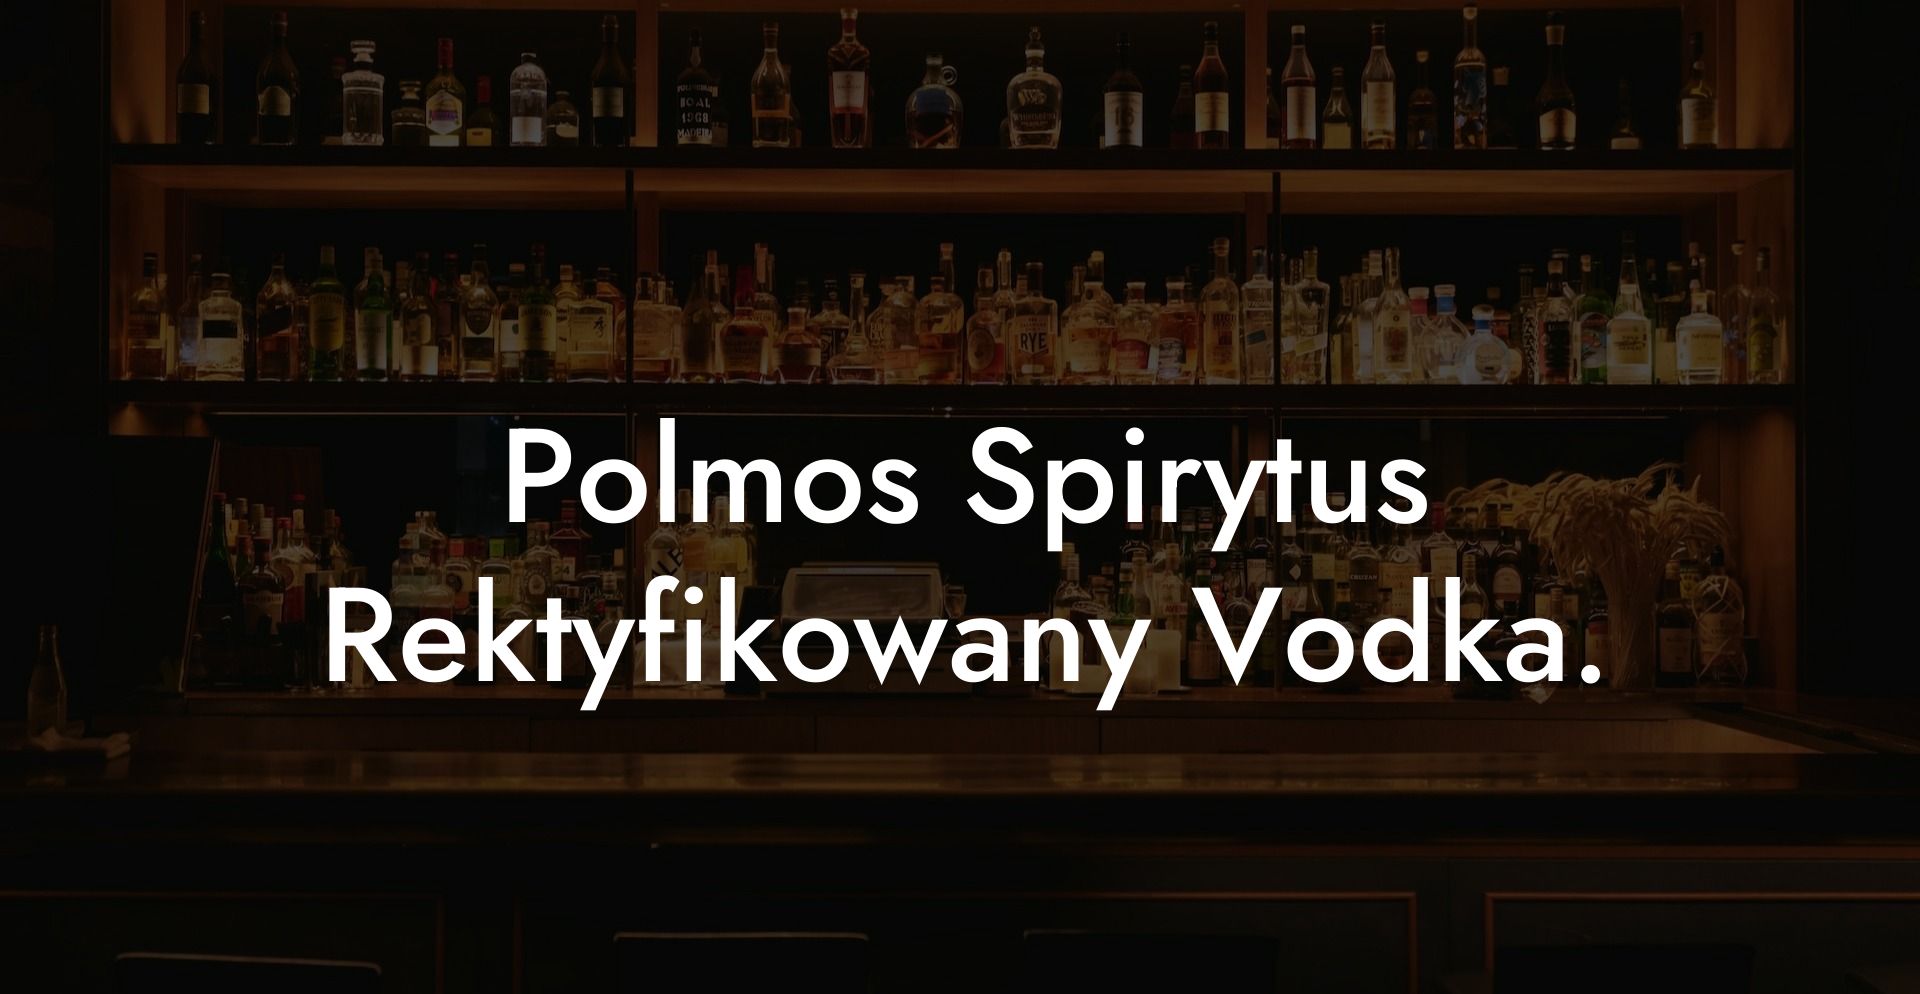 Polmos Spirytus Rektyfikowany Vodka.